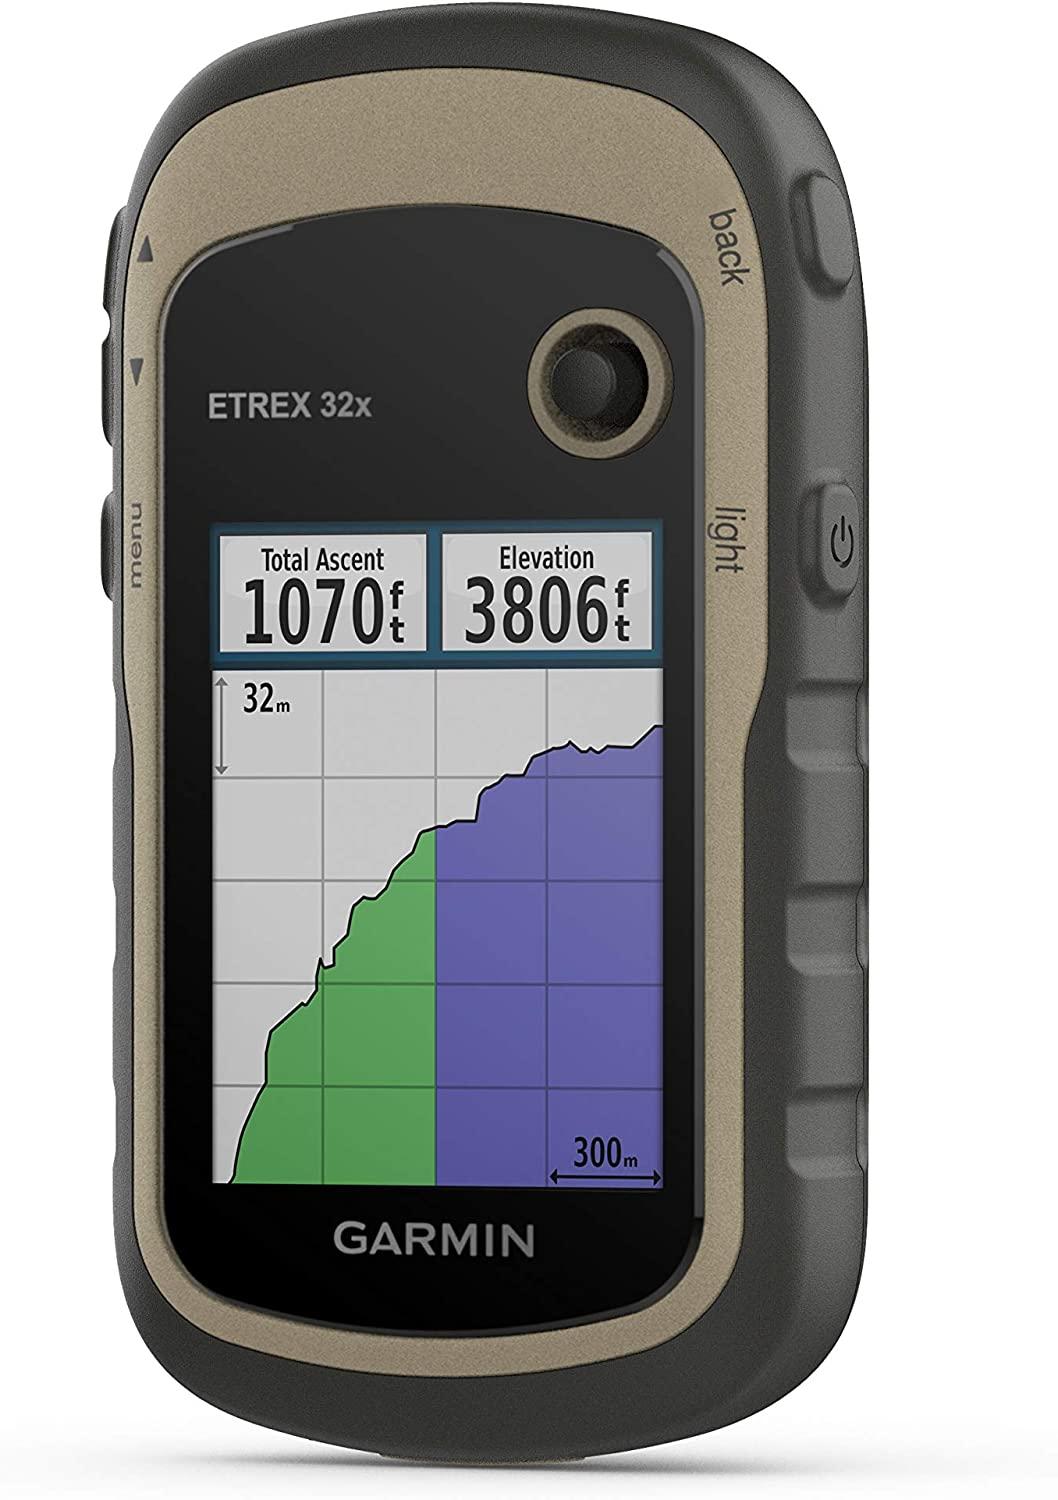 Garmin eTrex 32x Rugge Handheld GPS Best Price in Bangladesh